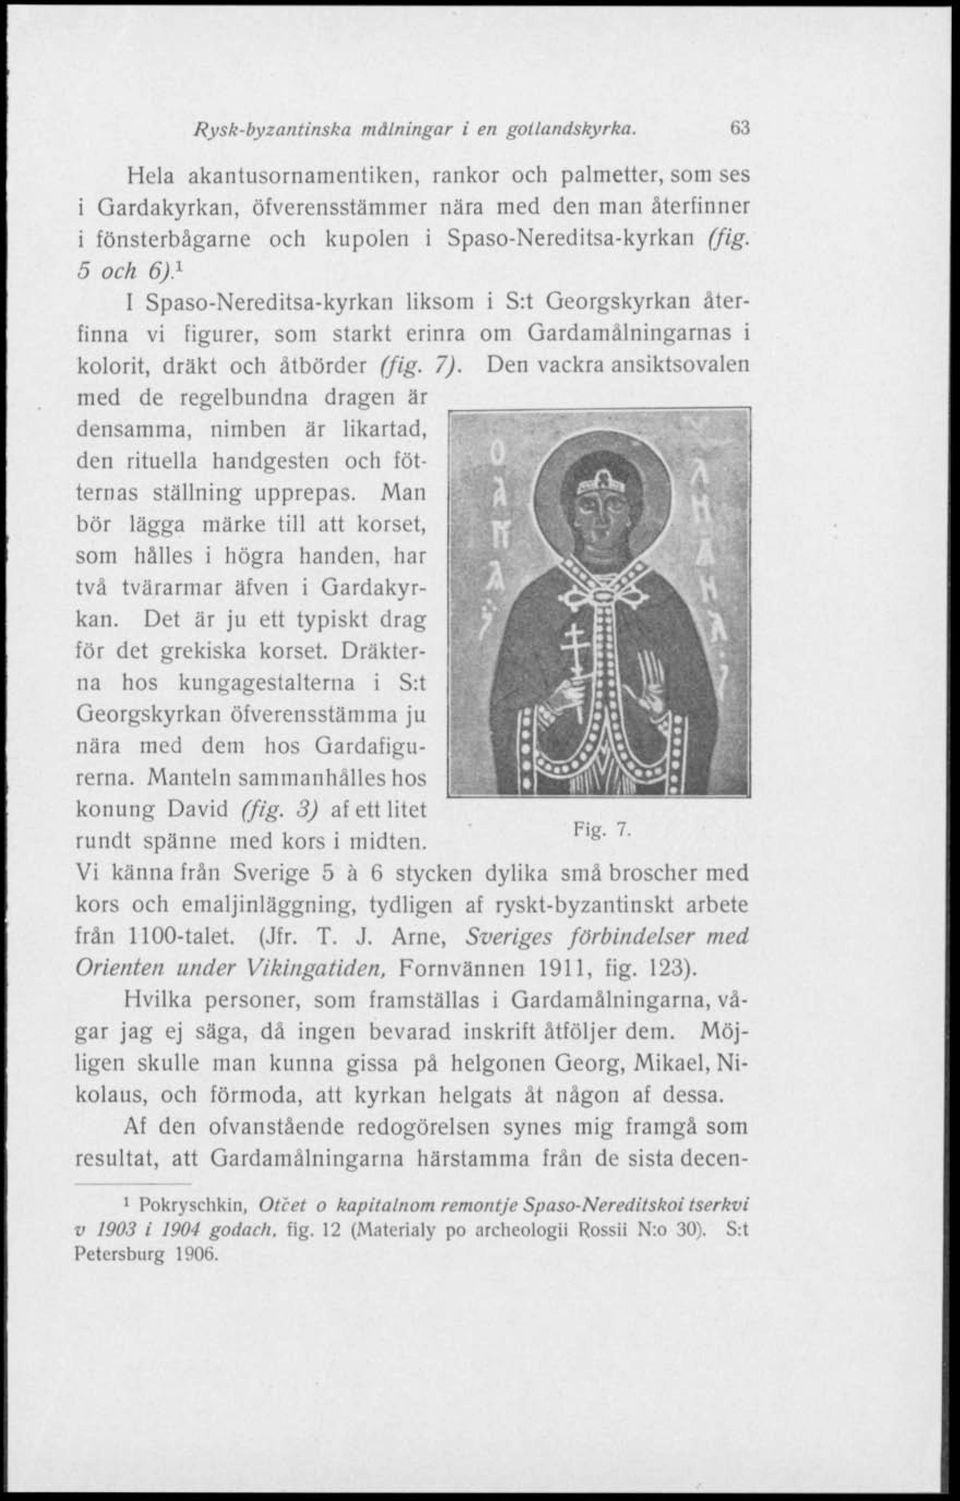 5 och 6) 1 t Spaso-Nereditsa-kyrkan liksom i S:t Georgskyrkan återfinna vi figurer, som starkt erinra om Gardamålningarnas i kolorit, dräkt och åtbörder (fig. 7).